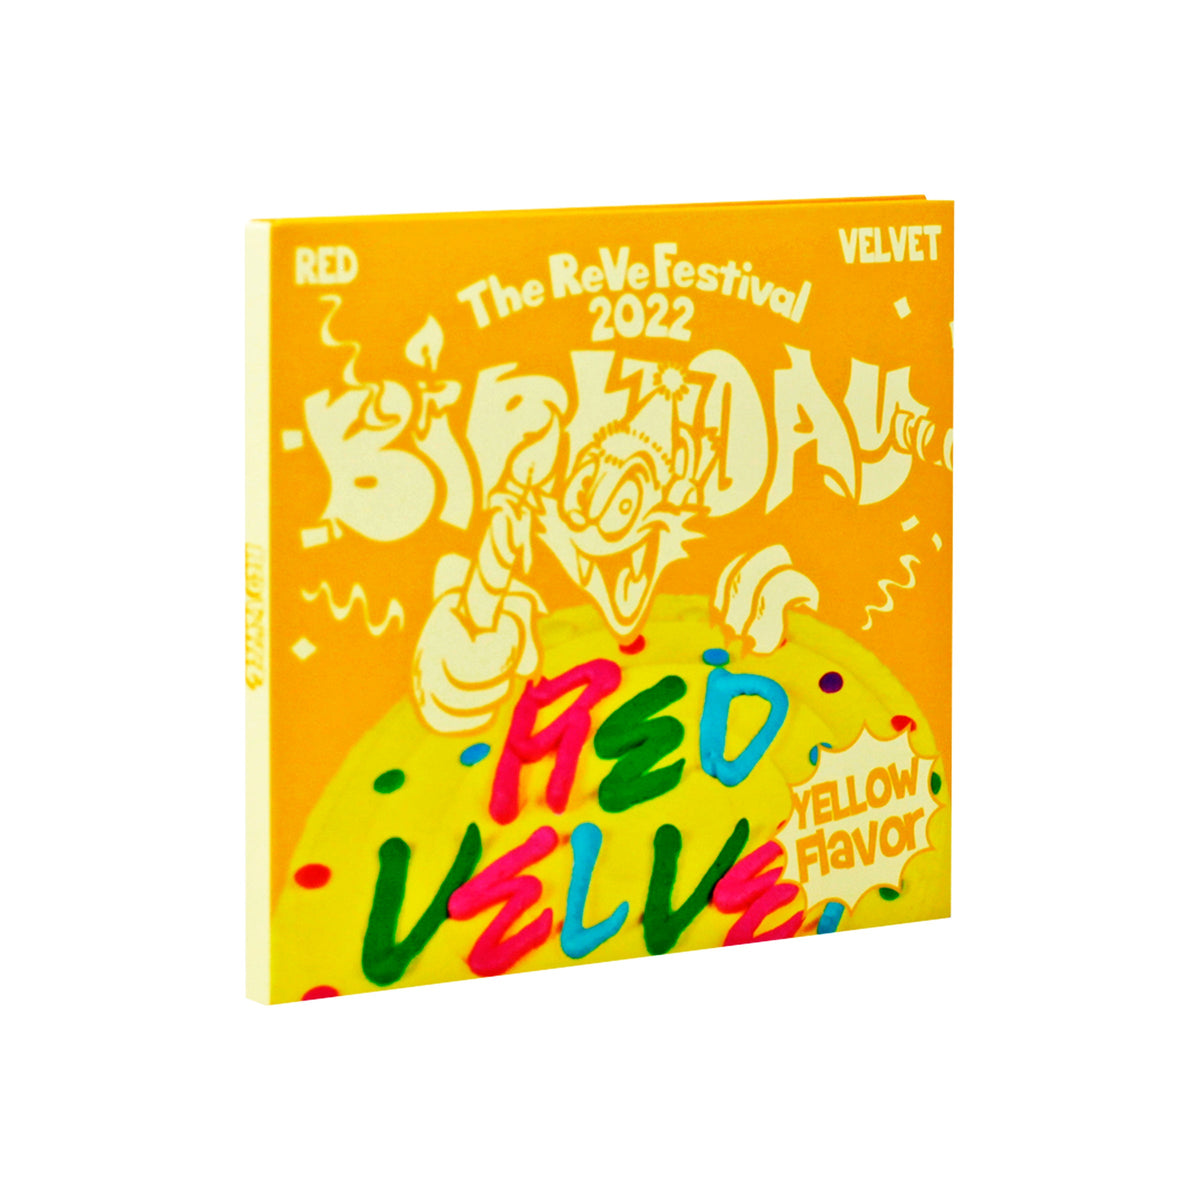 Red Velvet The ReVe Festival 2022 Birthday 10th Mini Album - Digipack Version Yellow Flavor main product image